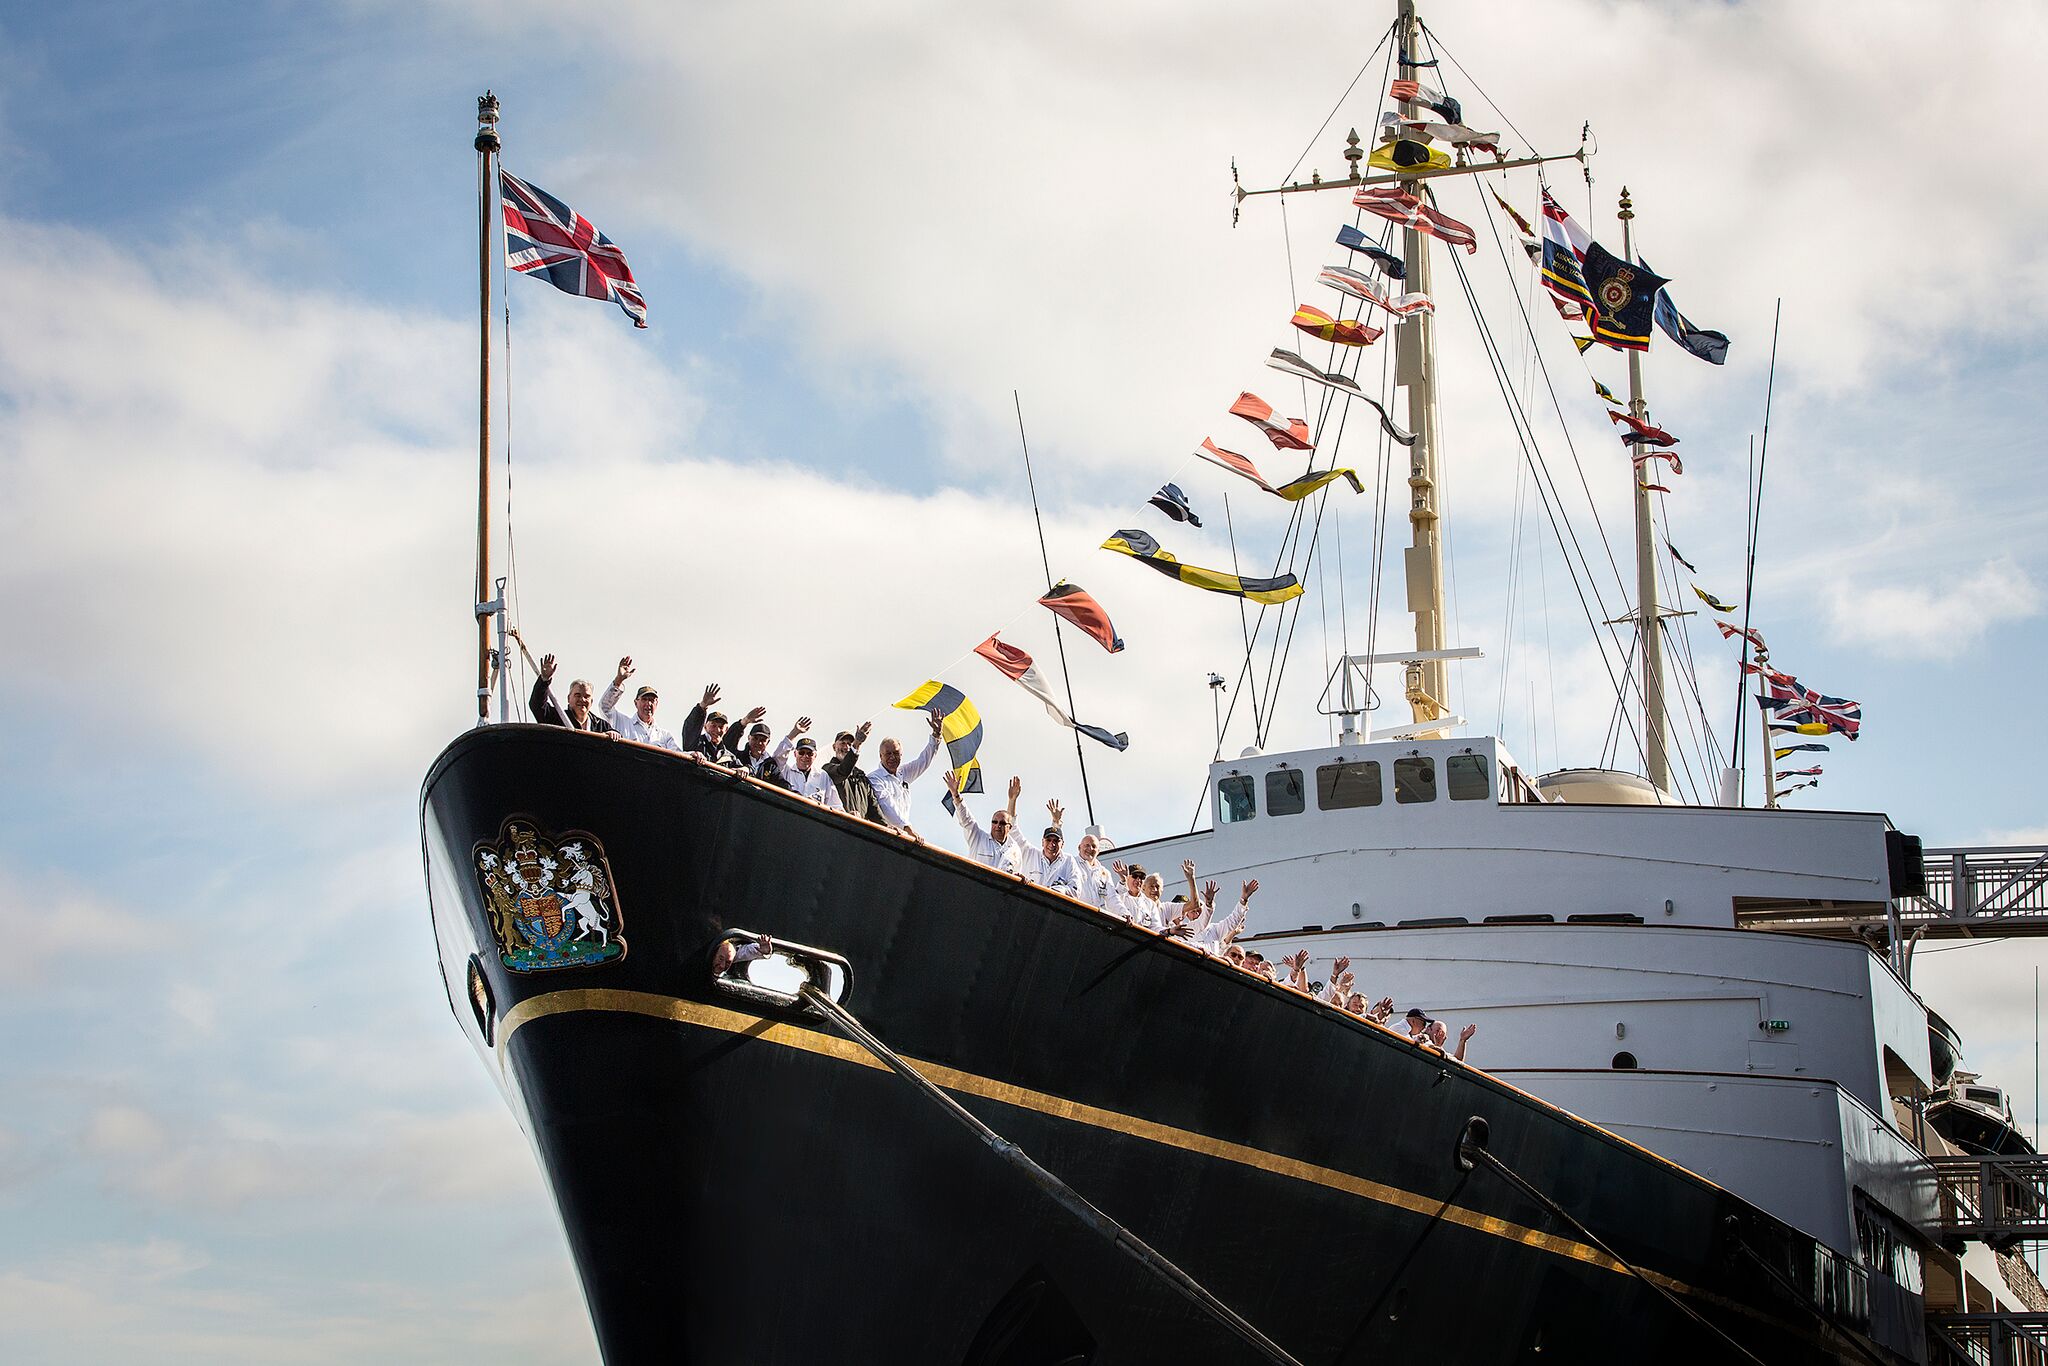 royal yacht britannia annual pass